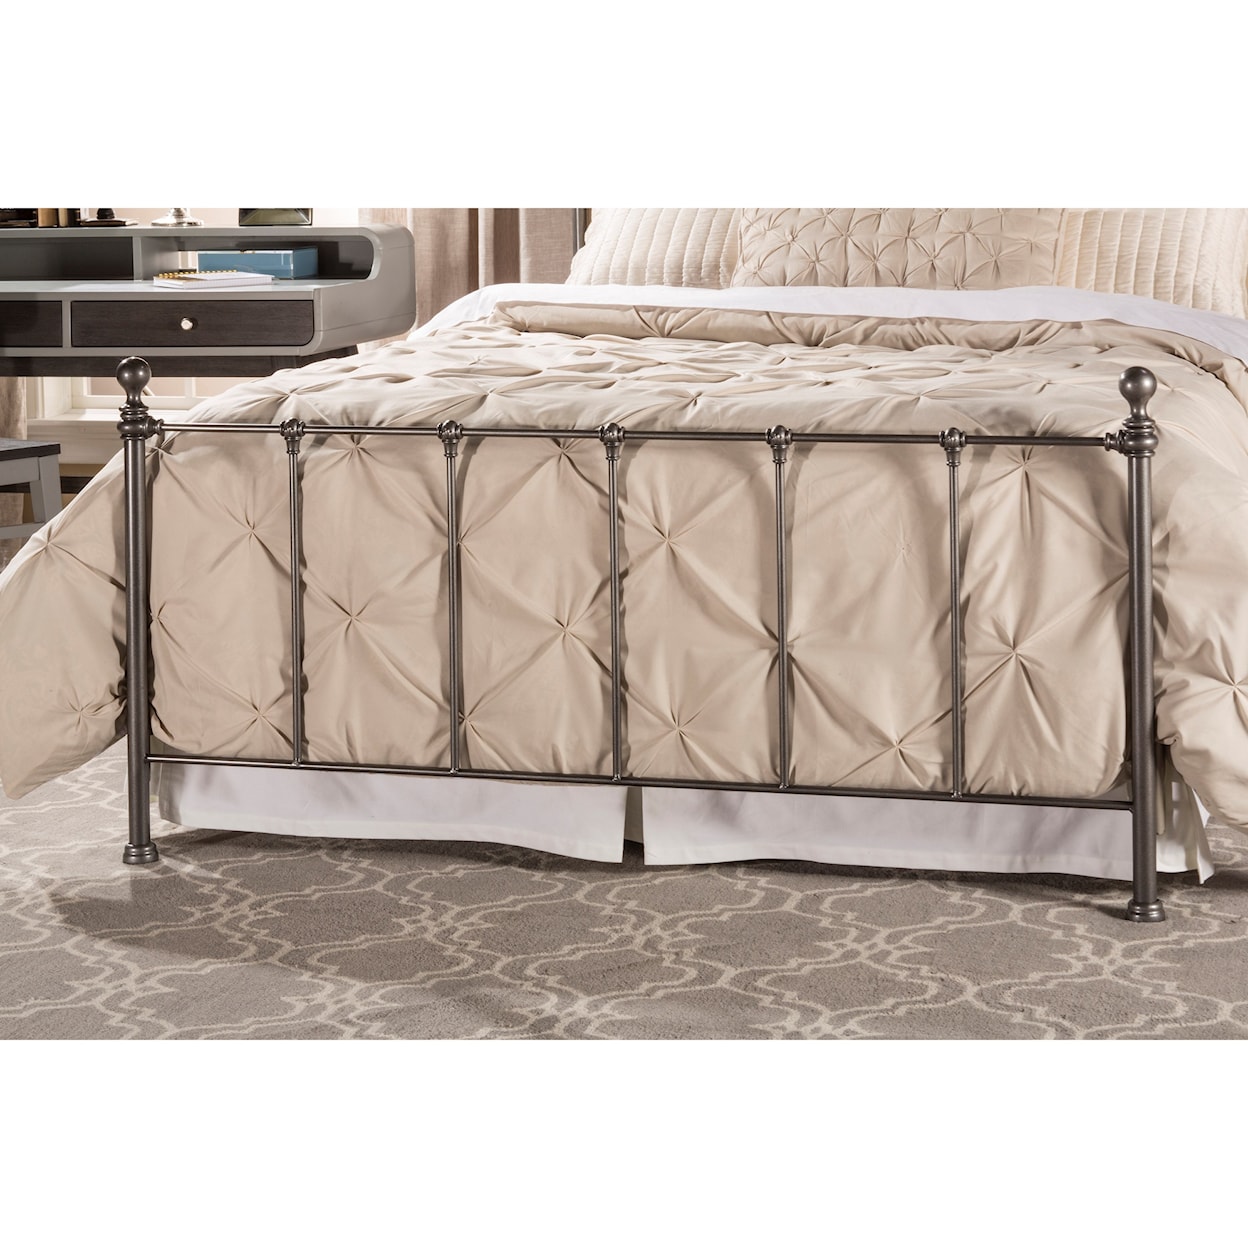 Hillsdale Metal Beds Queen Bed Set